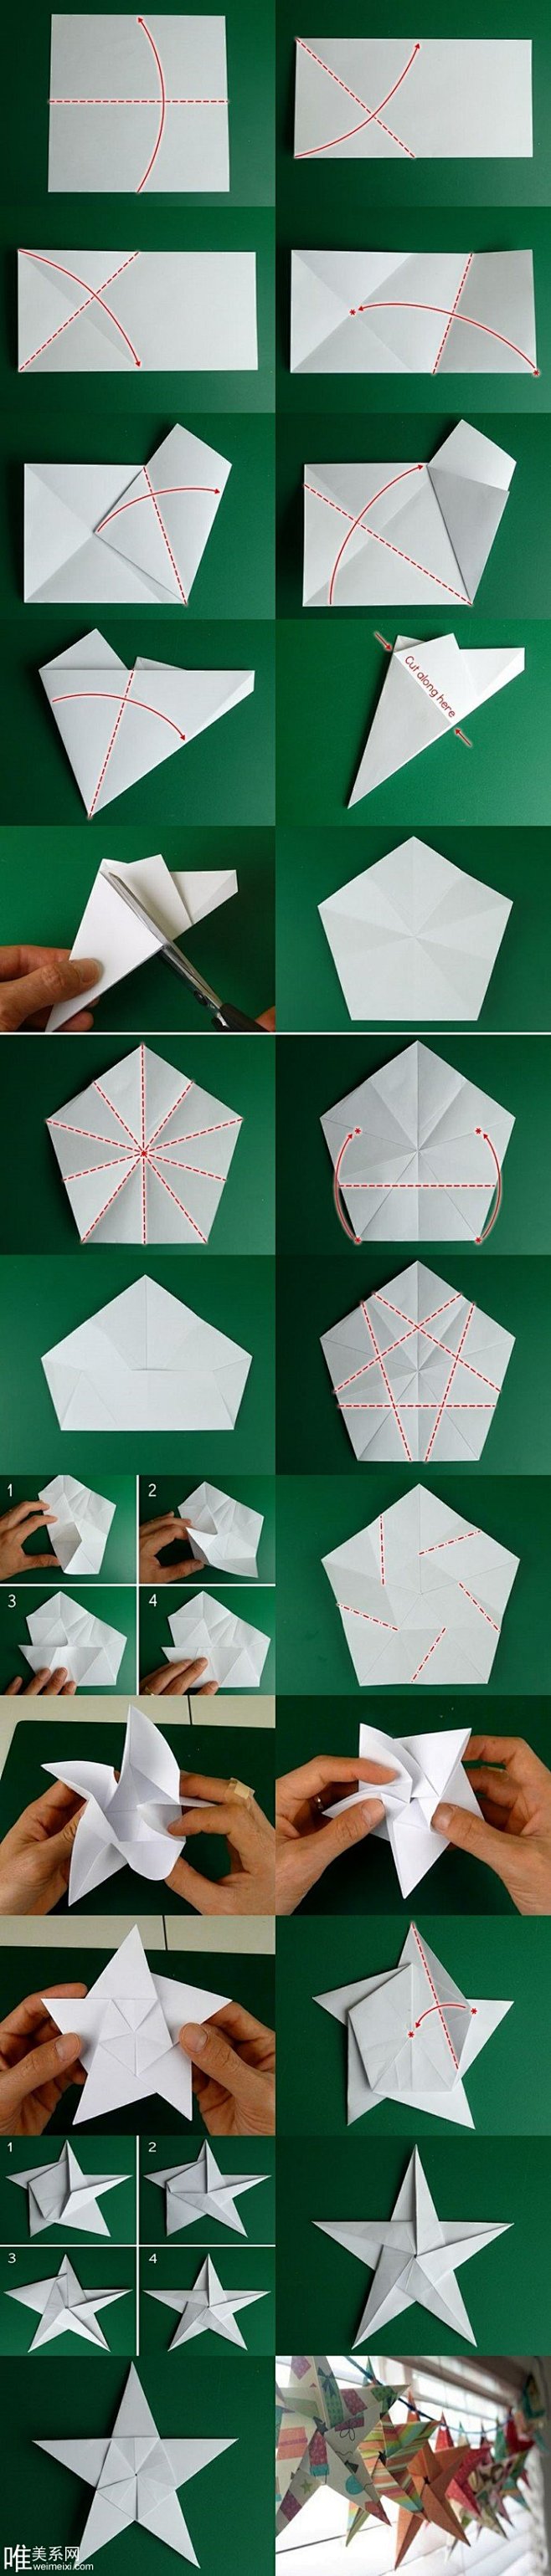 五角星一体折纸手工diy图片